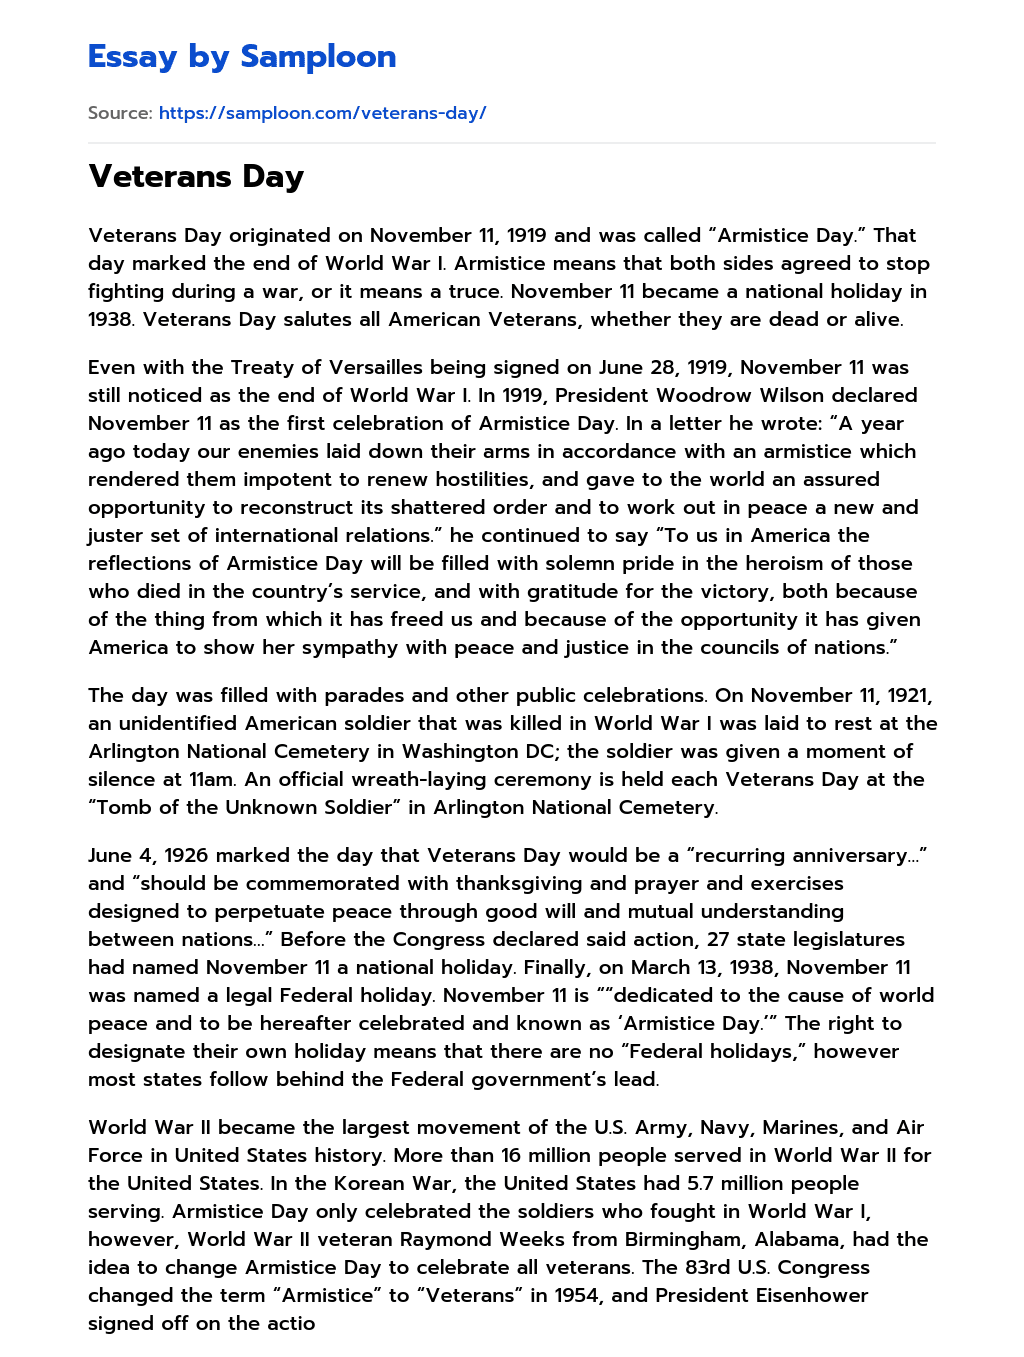 Veterans Day essay